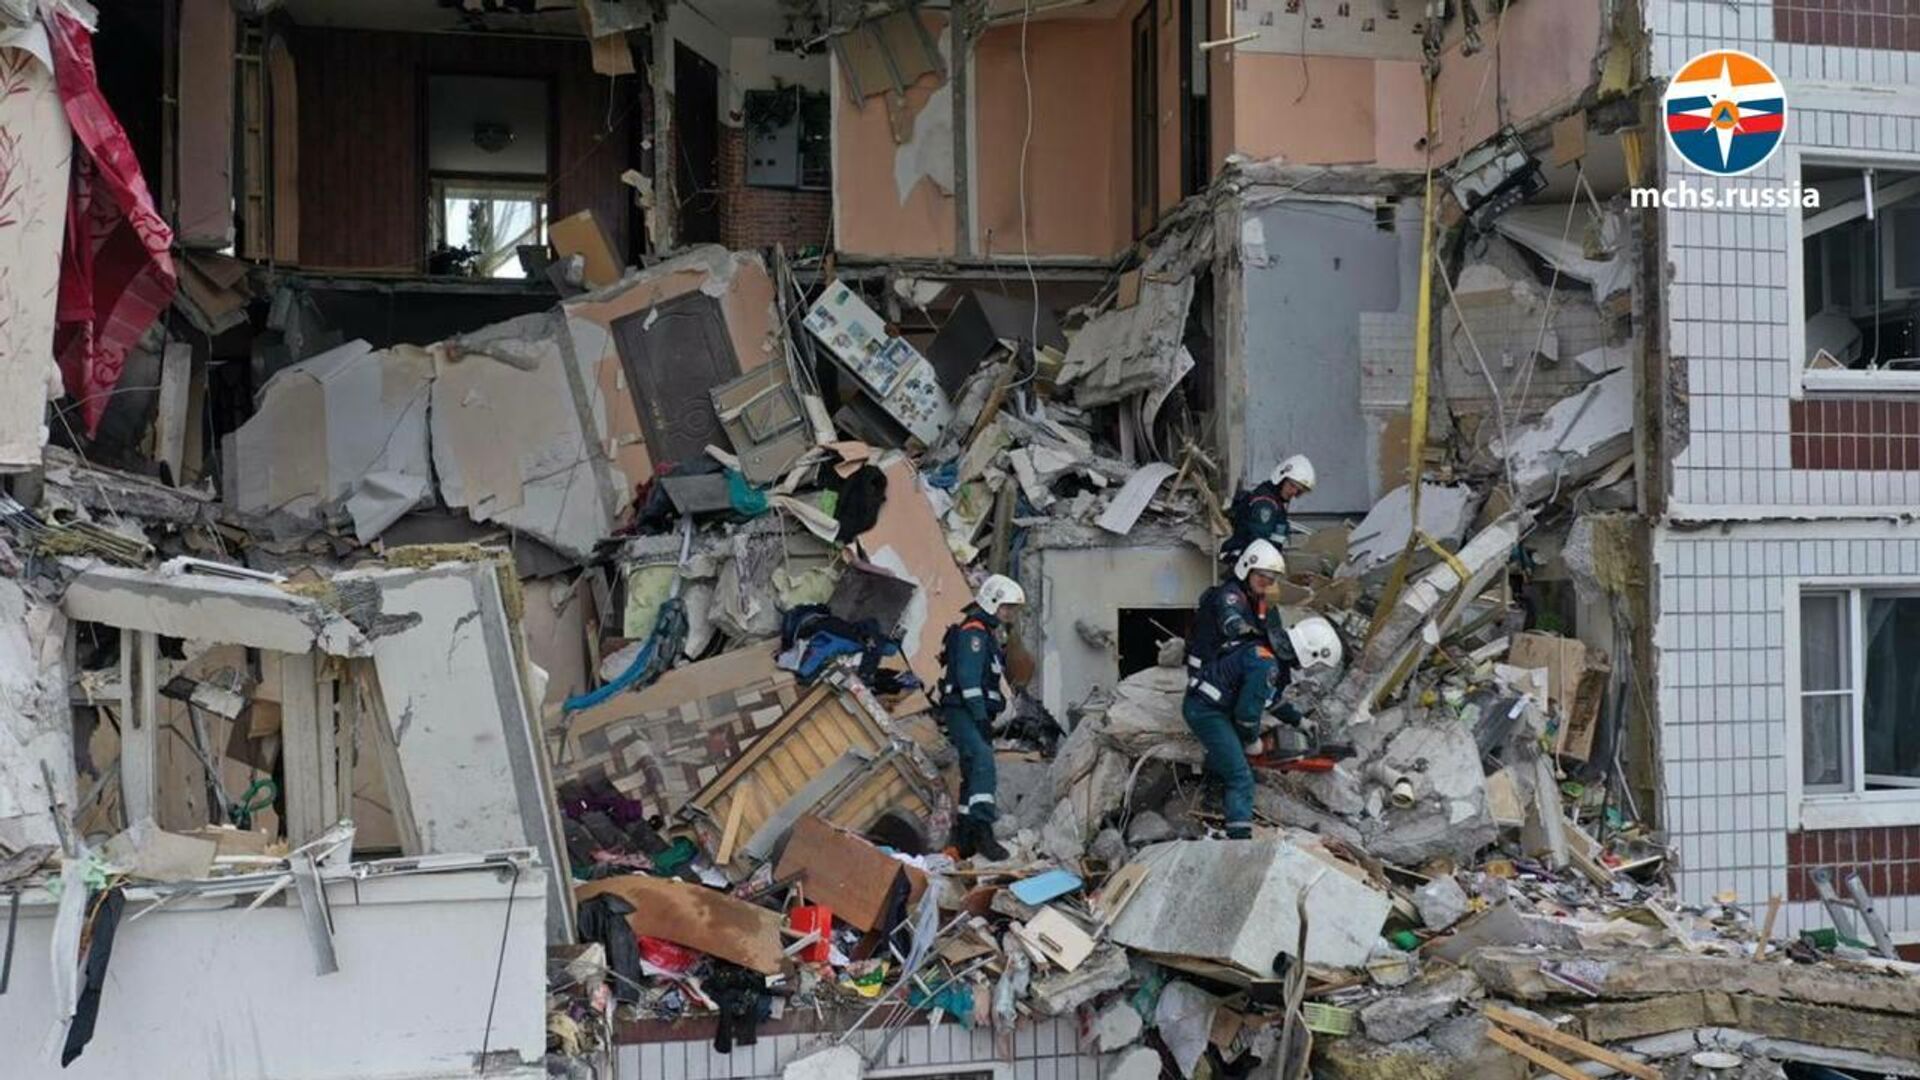 Многоквартирный жилой дом в Ногинске разрушенный в результате взрыва бытового газа - РИА Новости, 1920, 08.09.2021